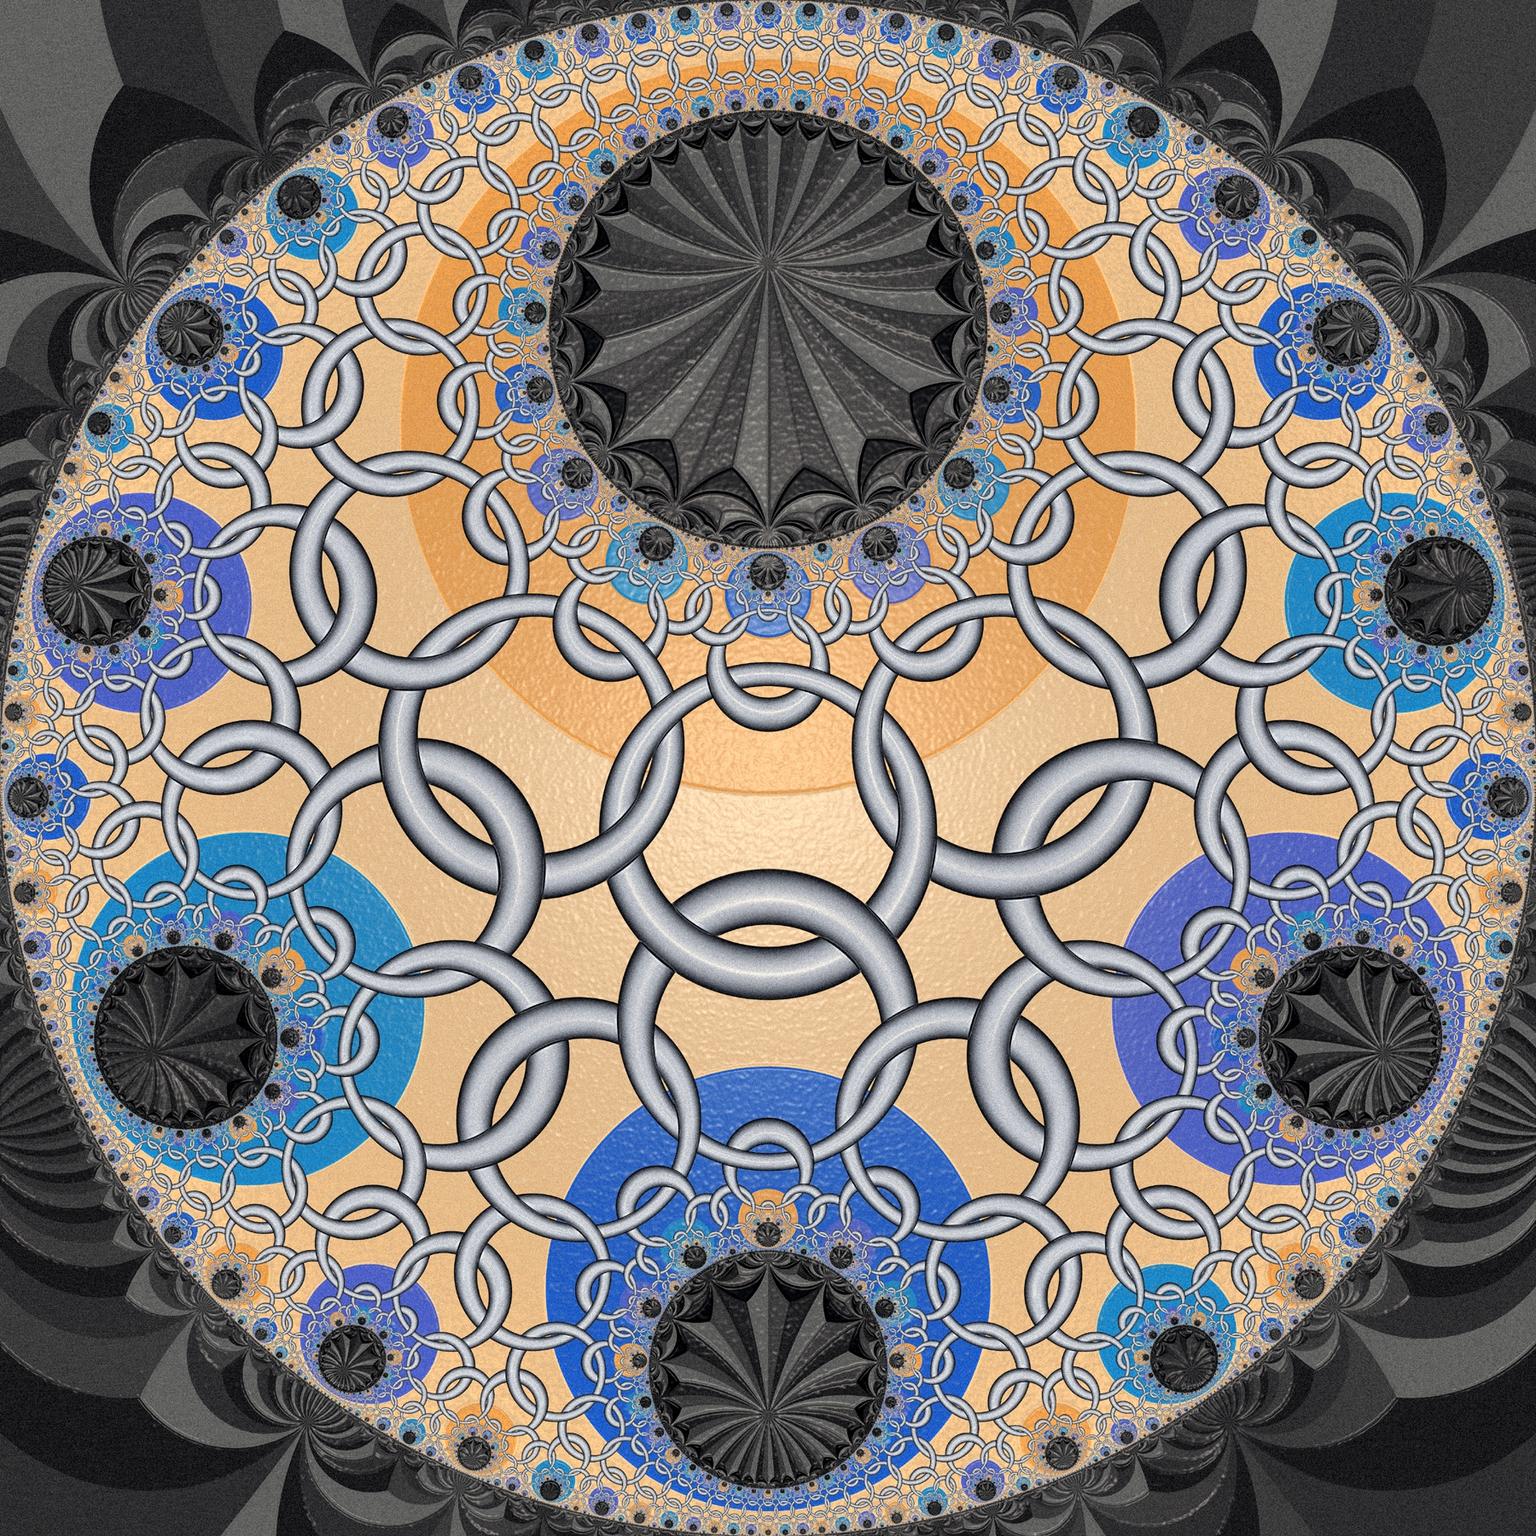 Image for entry 'Hyperbolic Tiling I'